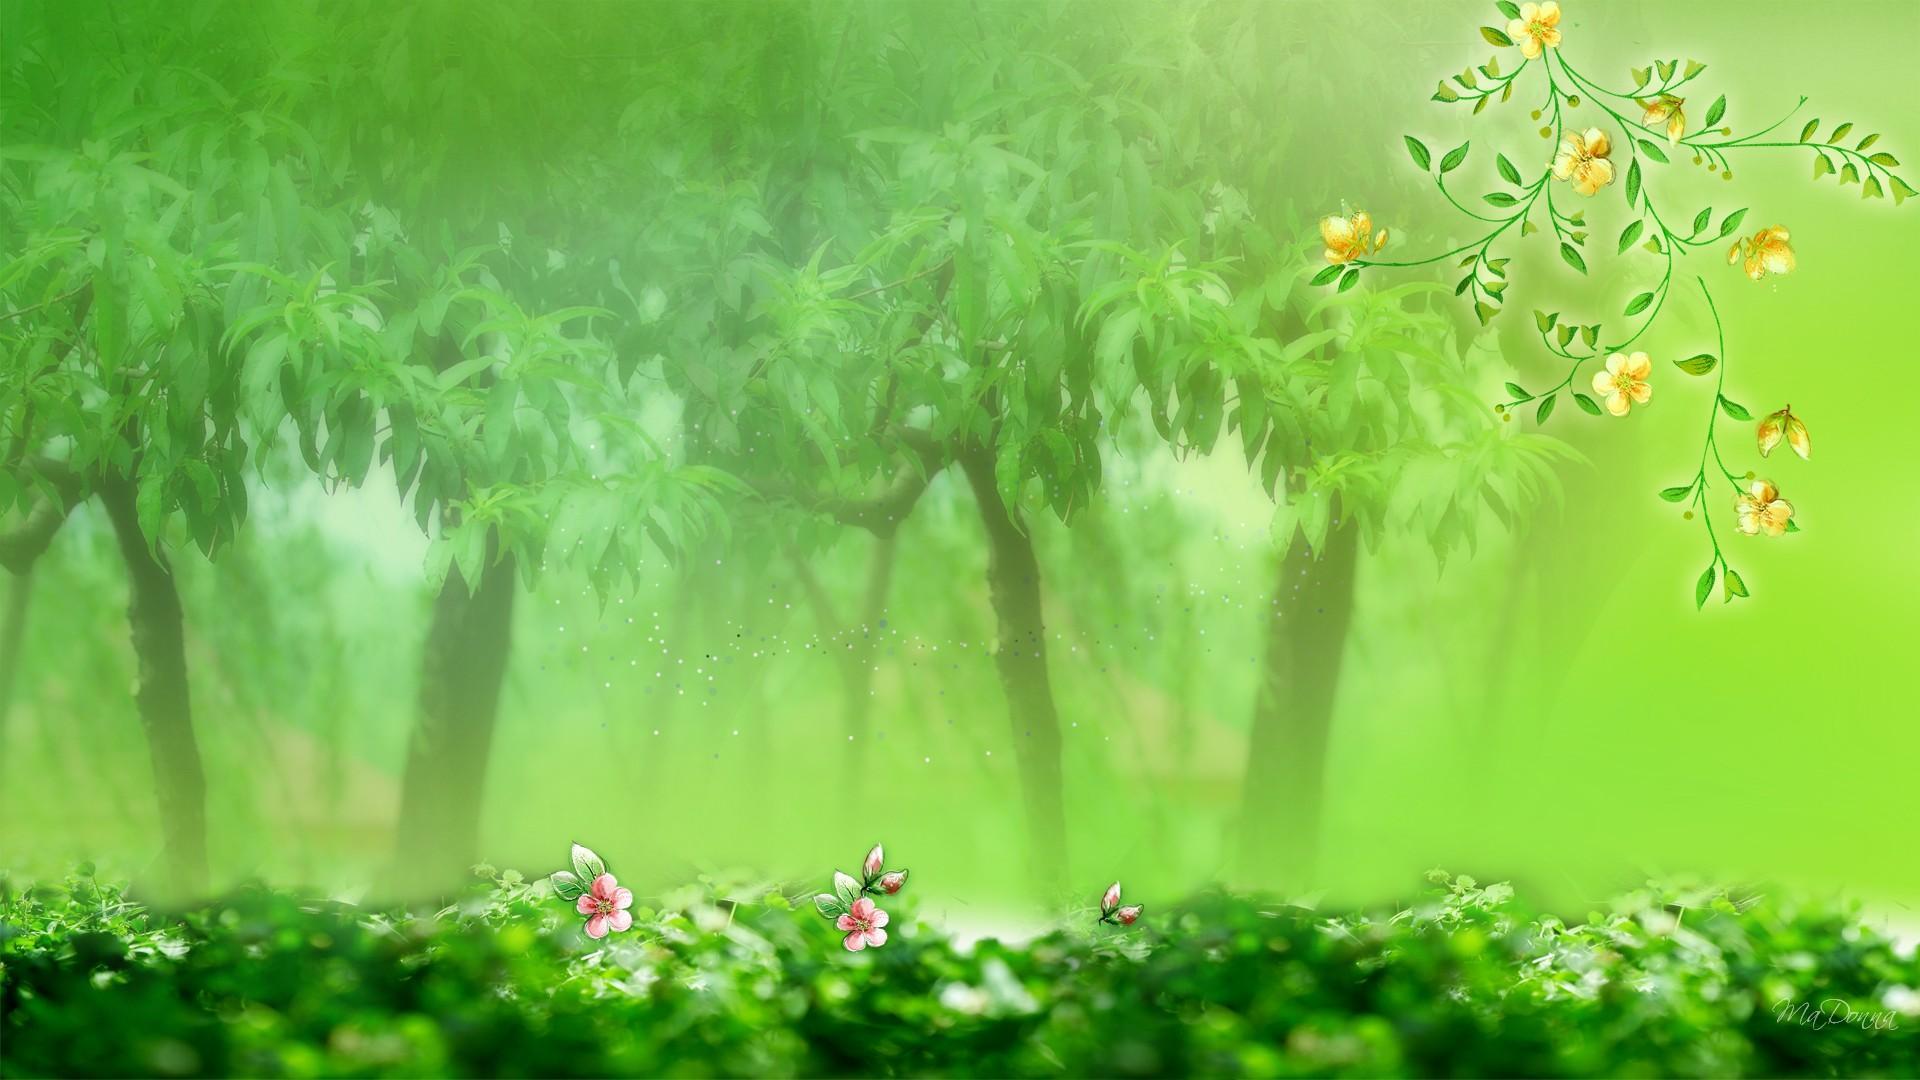 Green Spring Trees HD desktop wallpaper, Widescreen, High